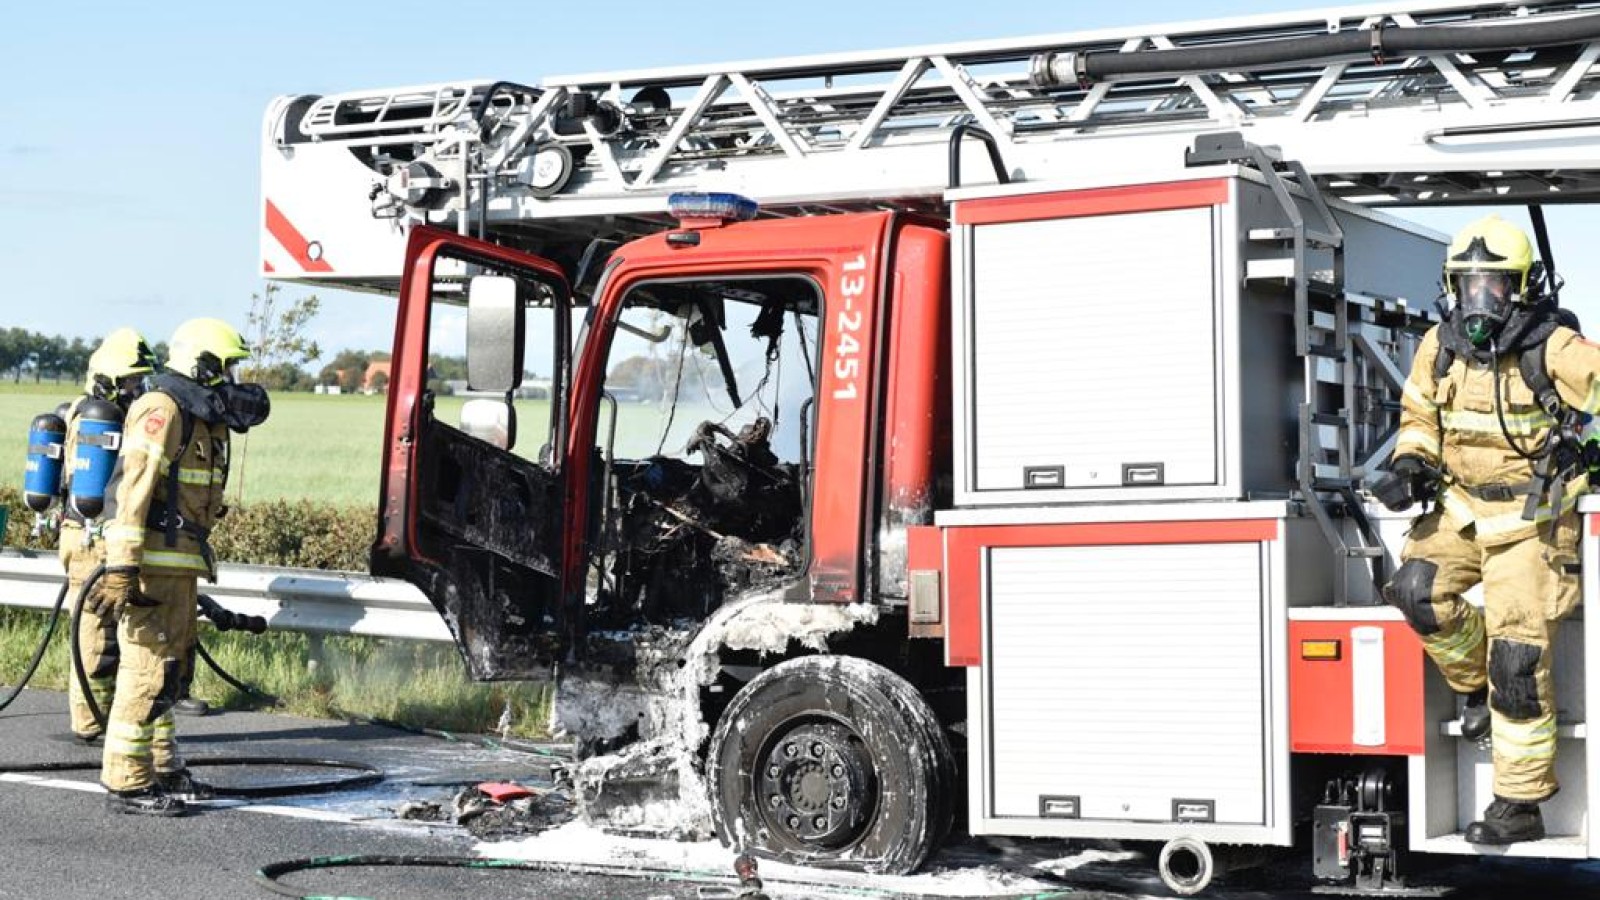 ladderwagen brandweer vliegt in brand